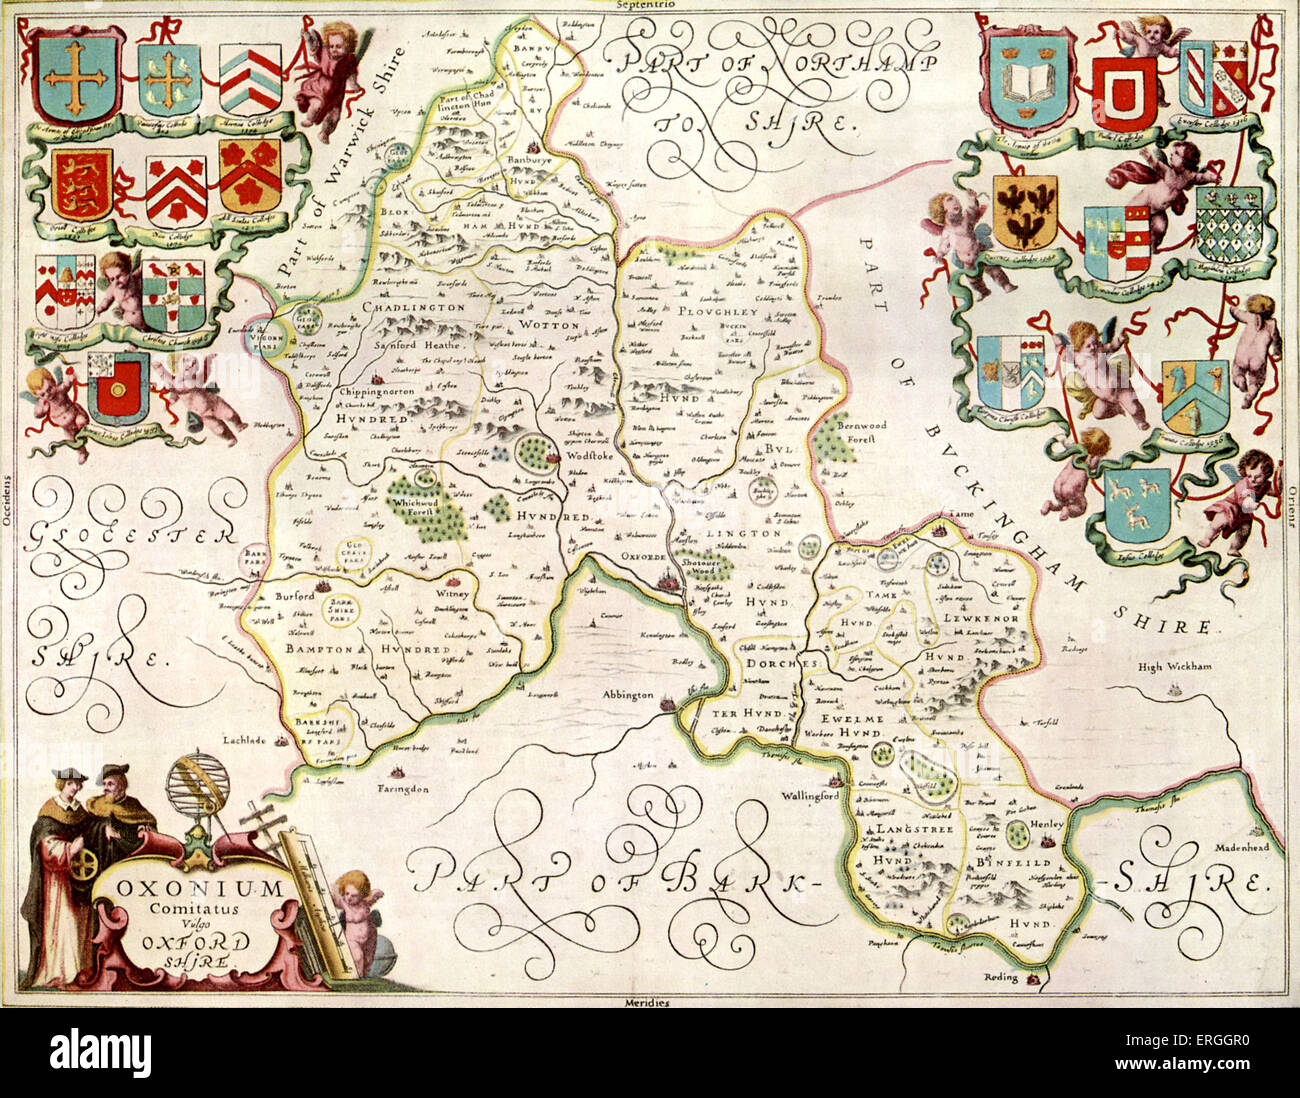 Mappa della contea di Oxford - pubblicato in Jansson 's "Atlas Novus", 1658. Con creste del College di Oxford University. Foto Stock